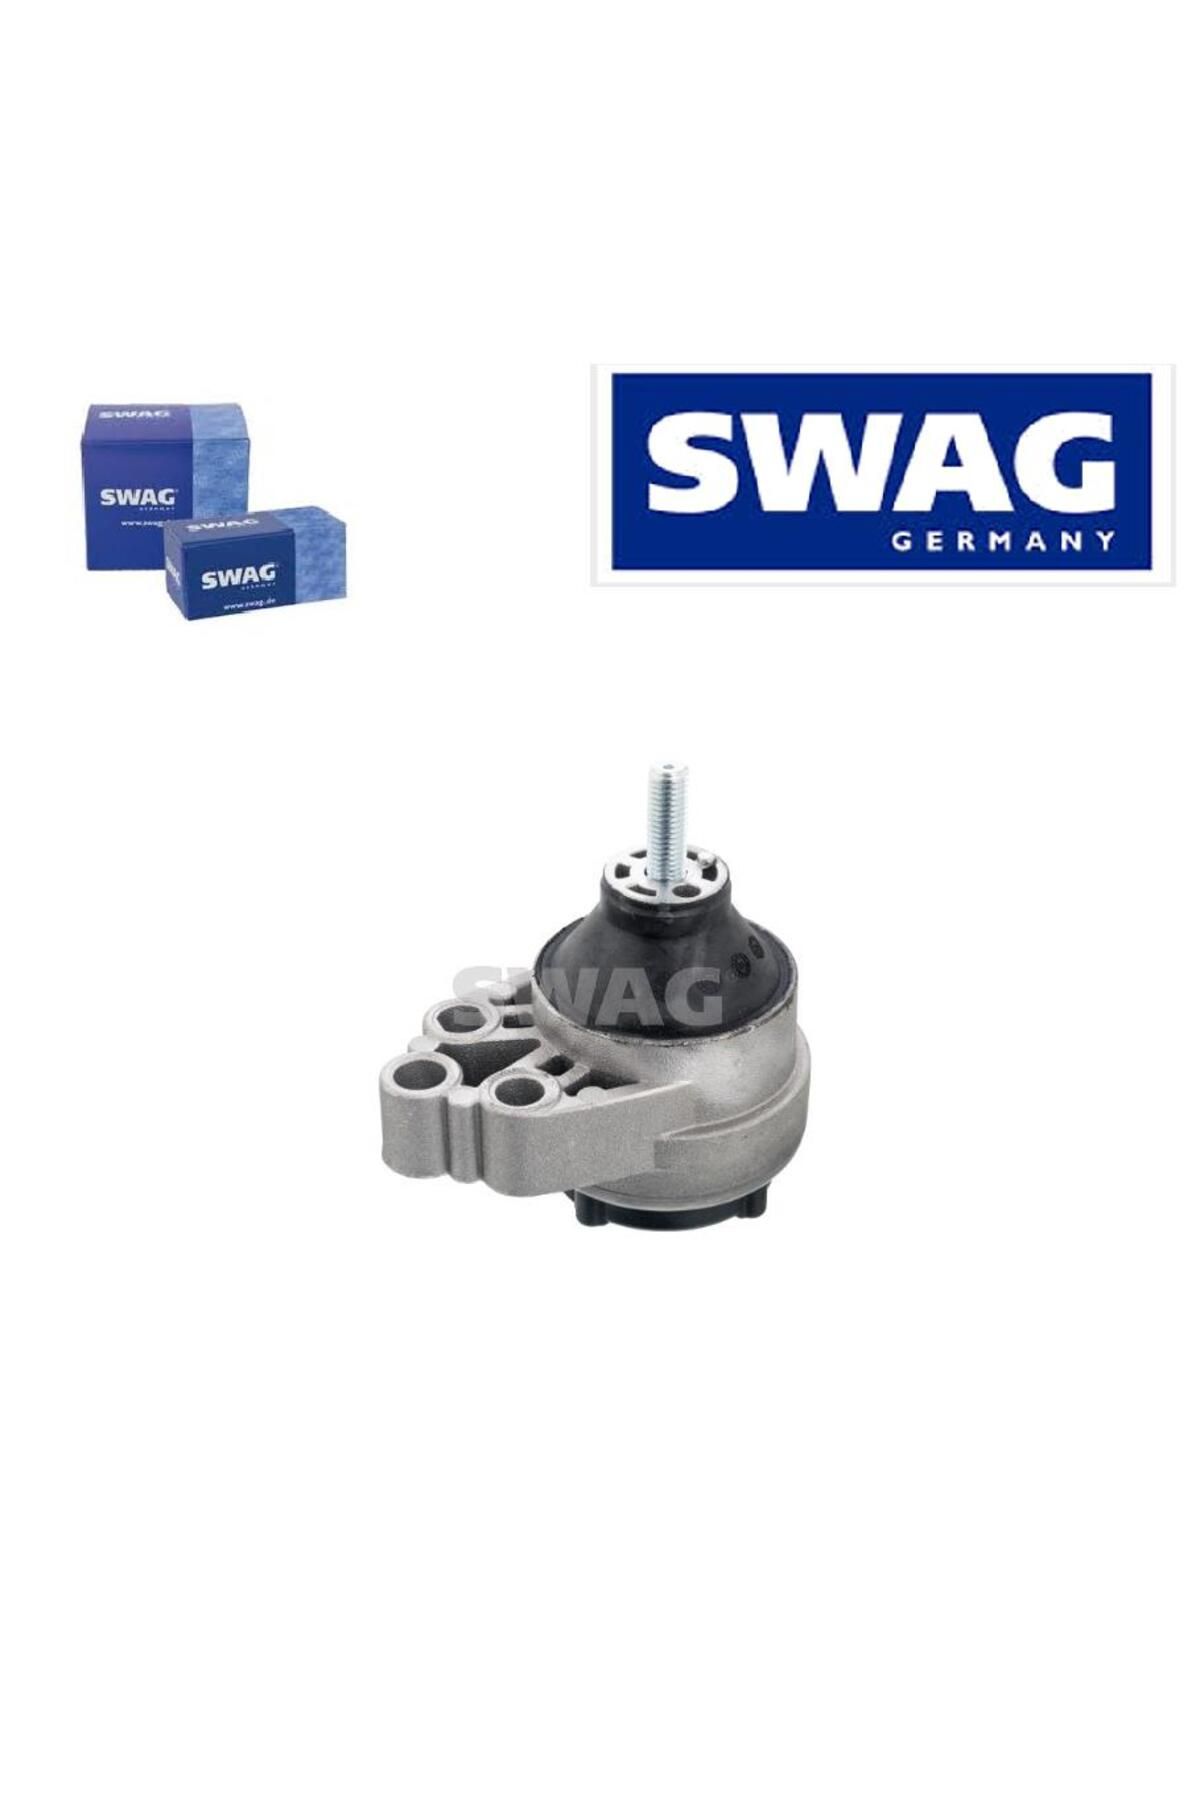 Swag Motor Takozu Focus 1 Sedan Hb Sw 1.4 1.6 16v 98-04 1061107 50922287